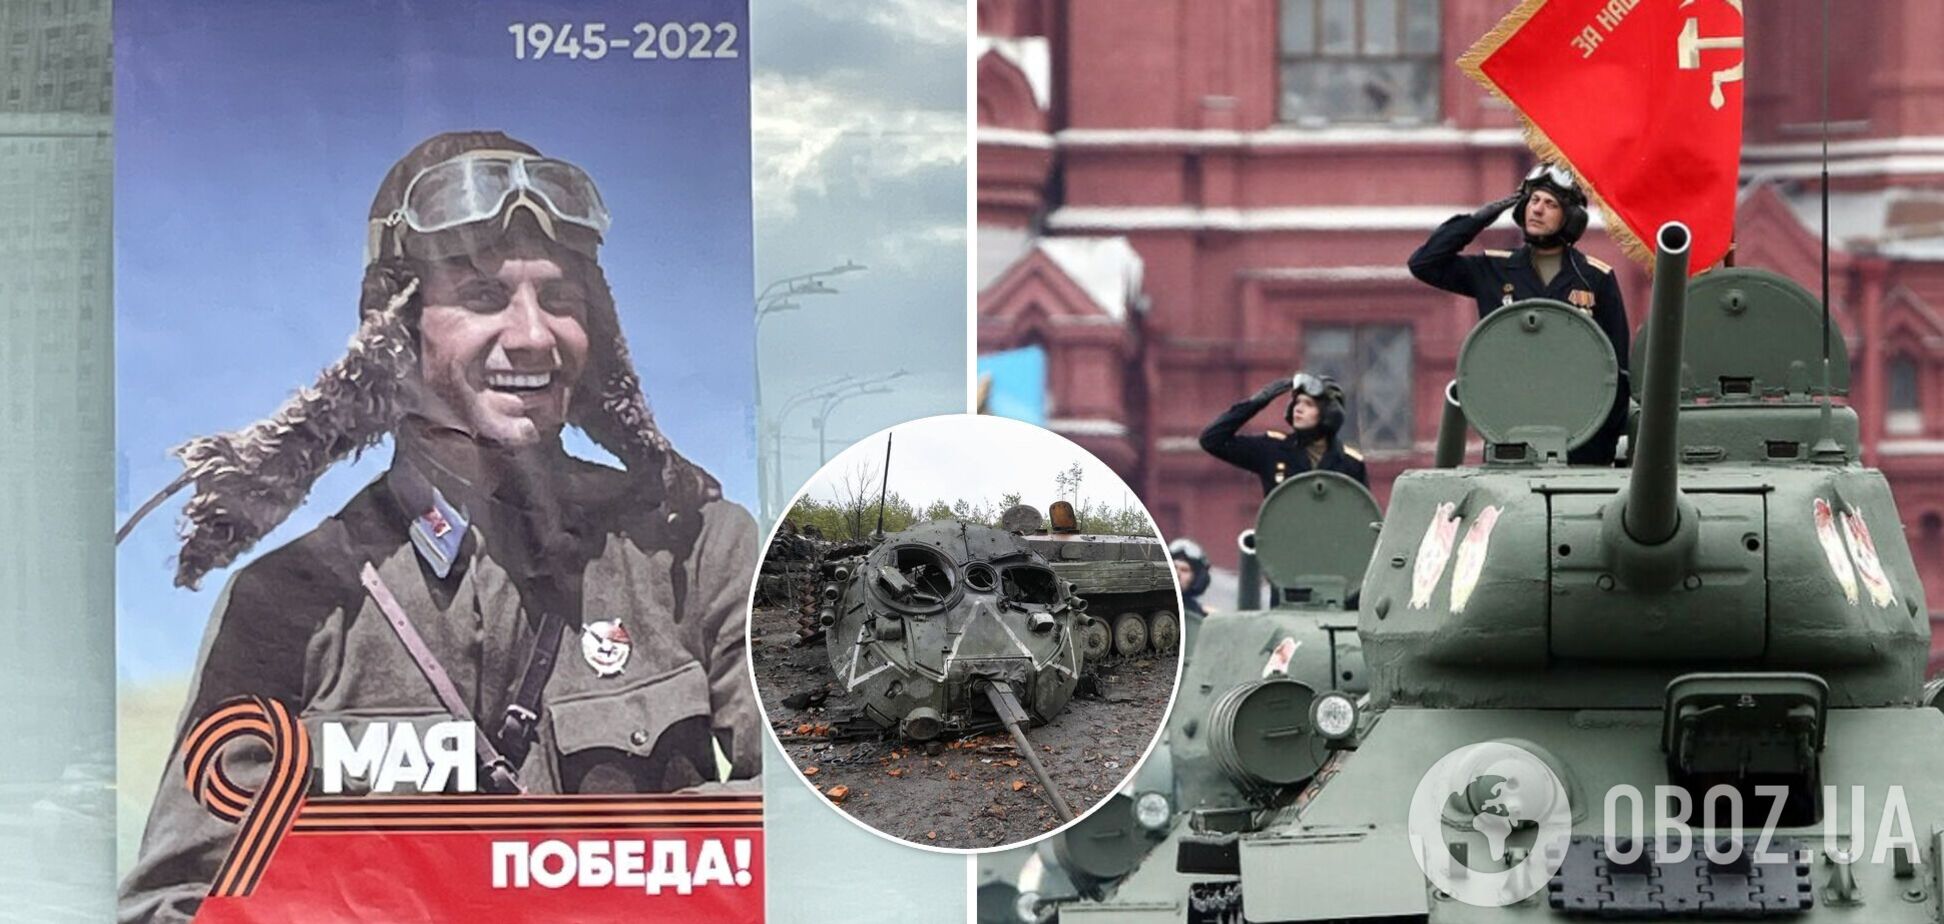 В Москве разместили плакаты к 9 мая с надписью 'победа' и указанием годов 1945-2022. Фото